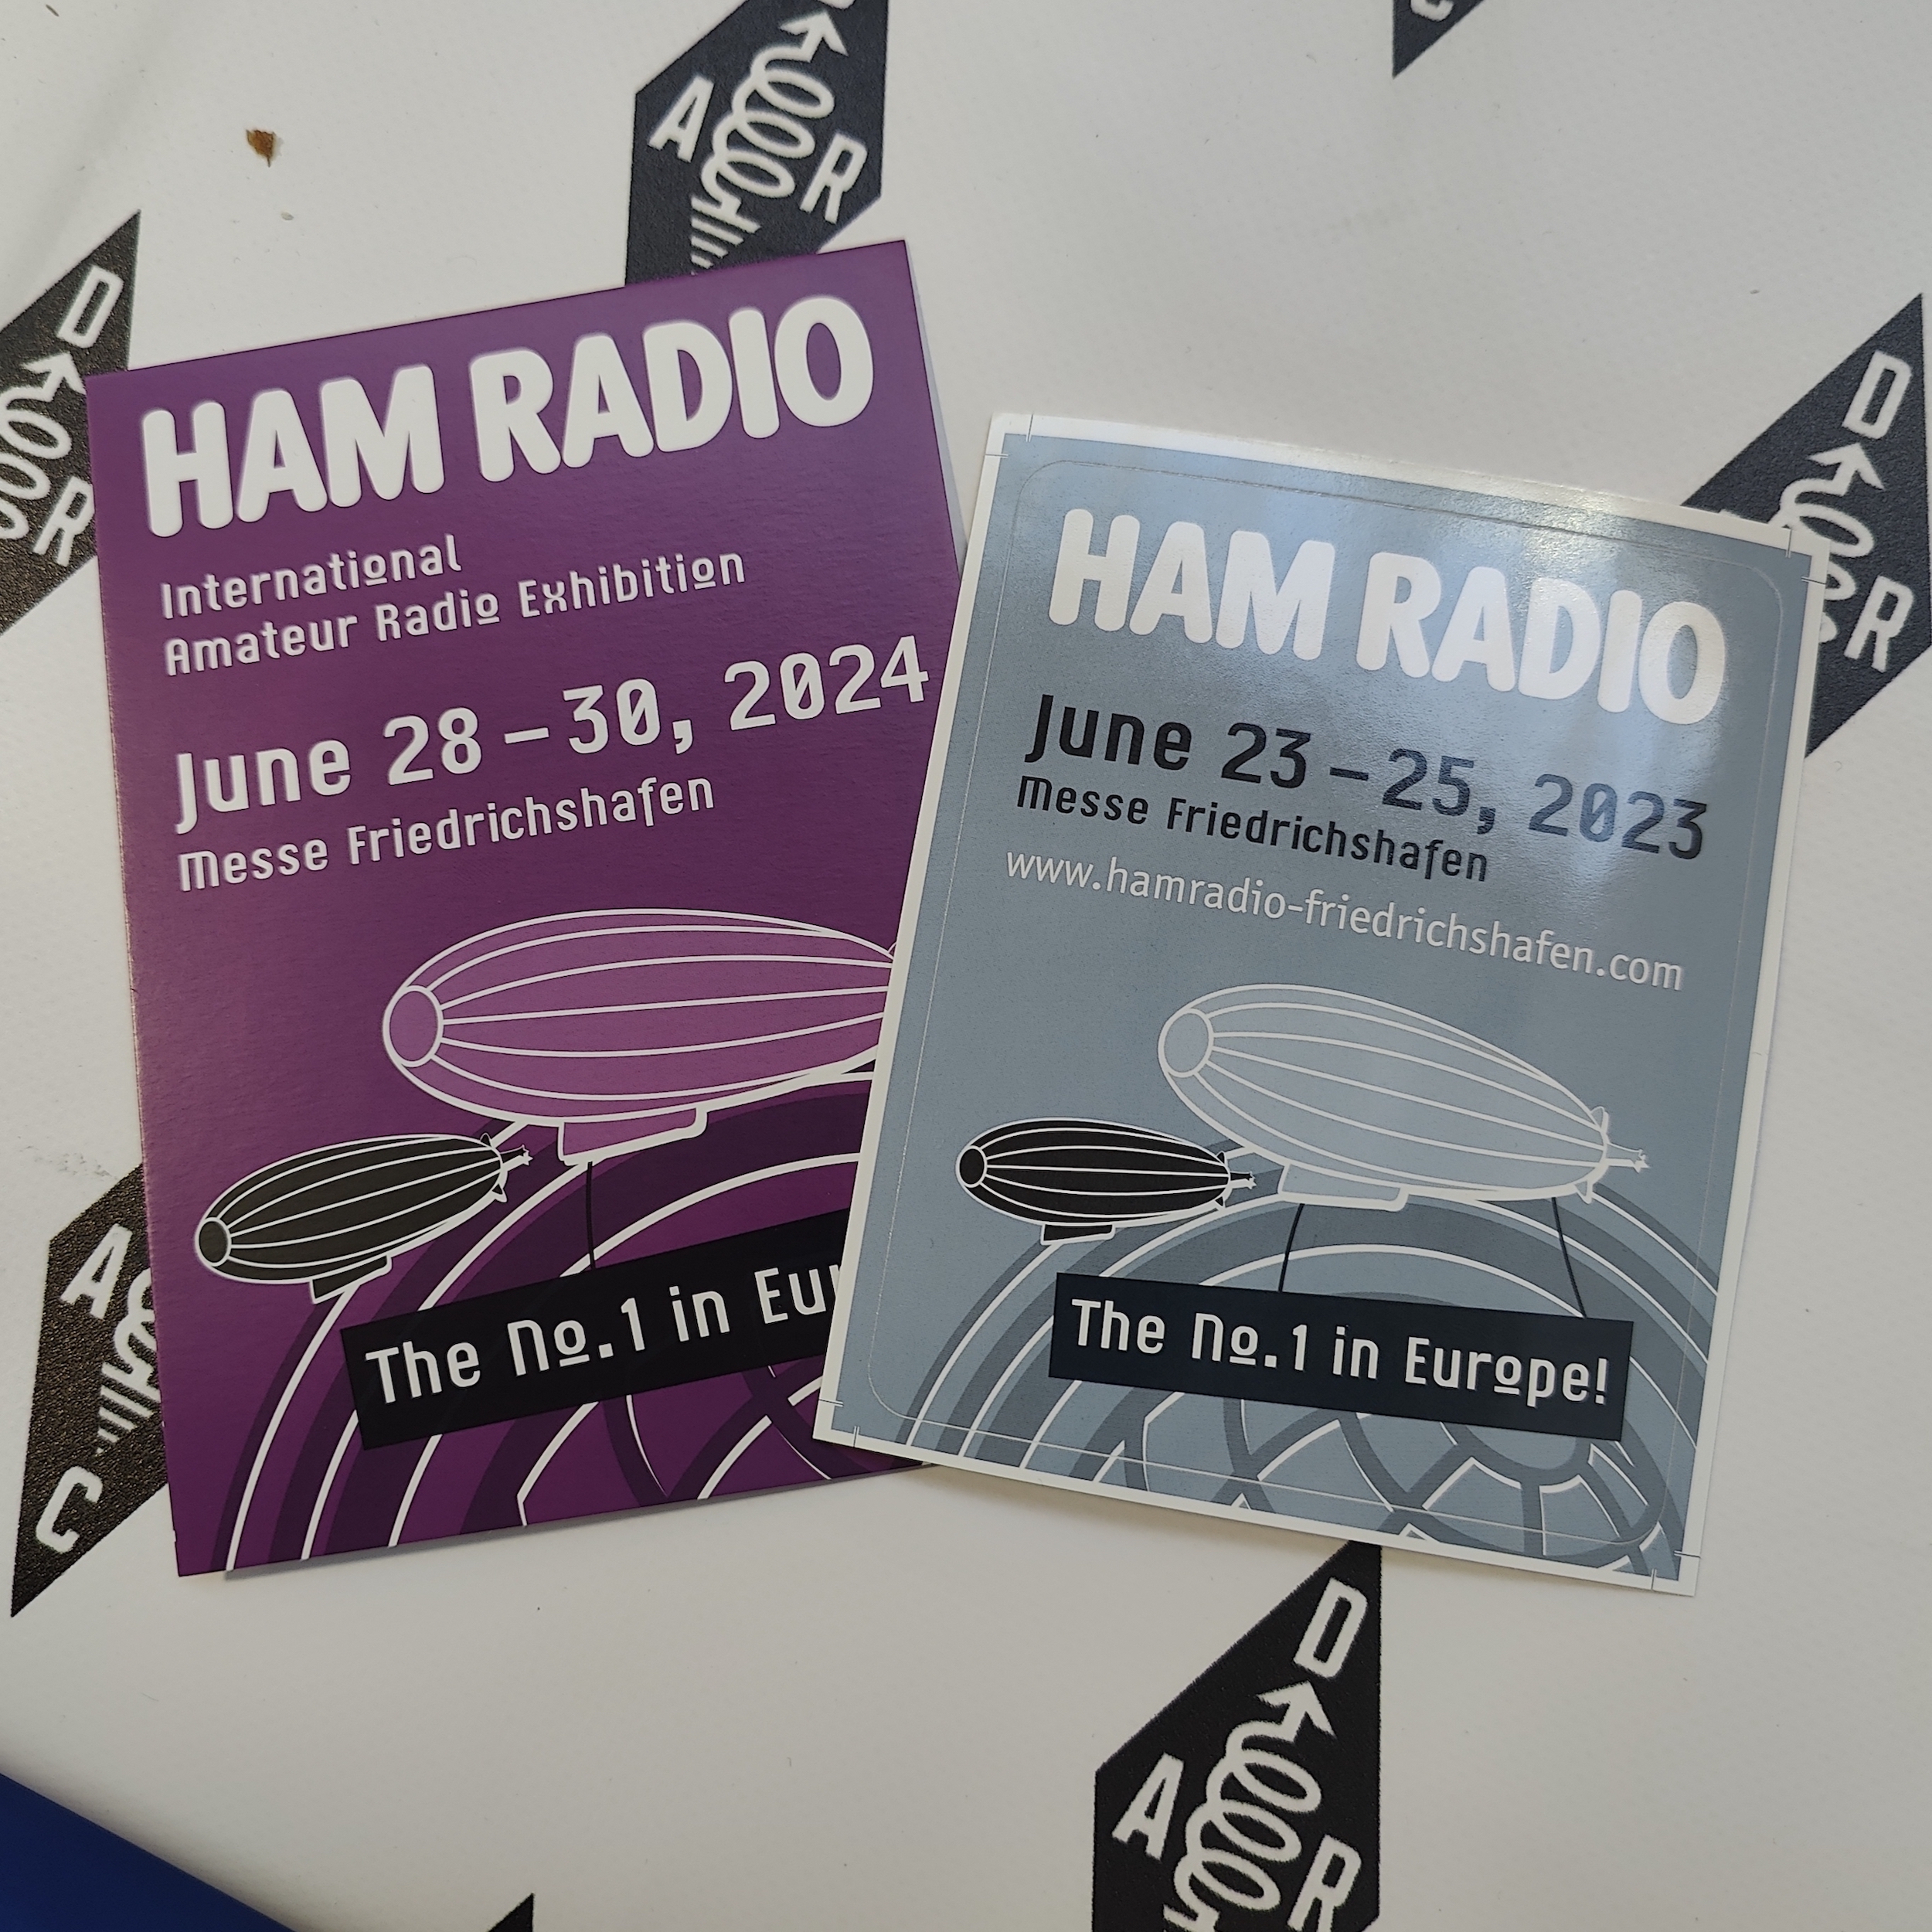 Flyers advertising Ham Radio Friedrichshafen 2023